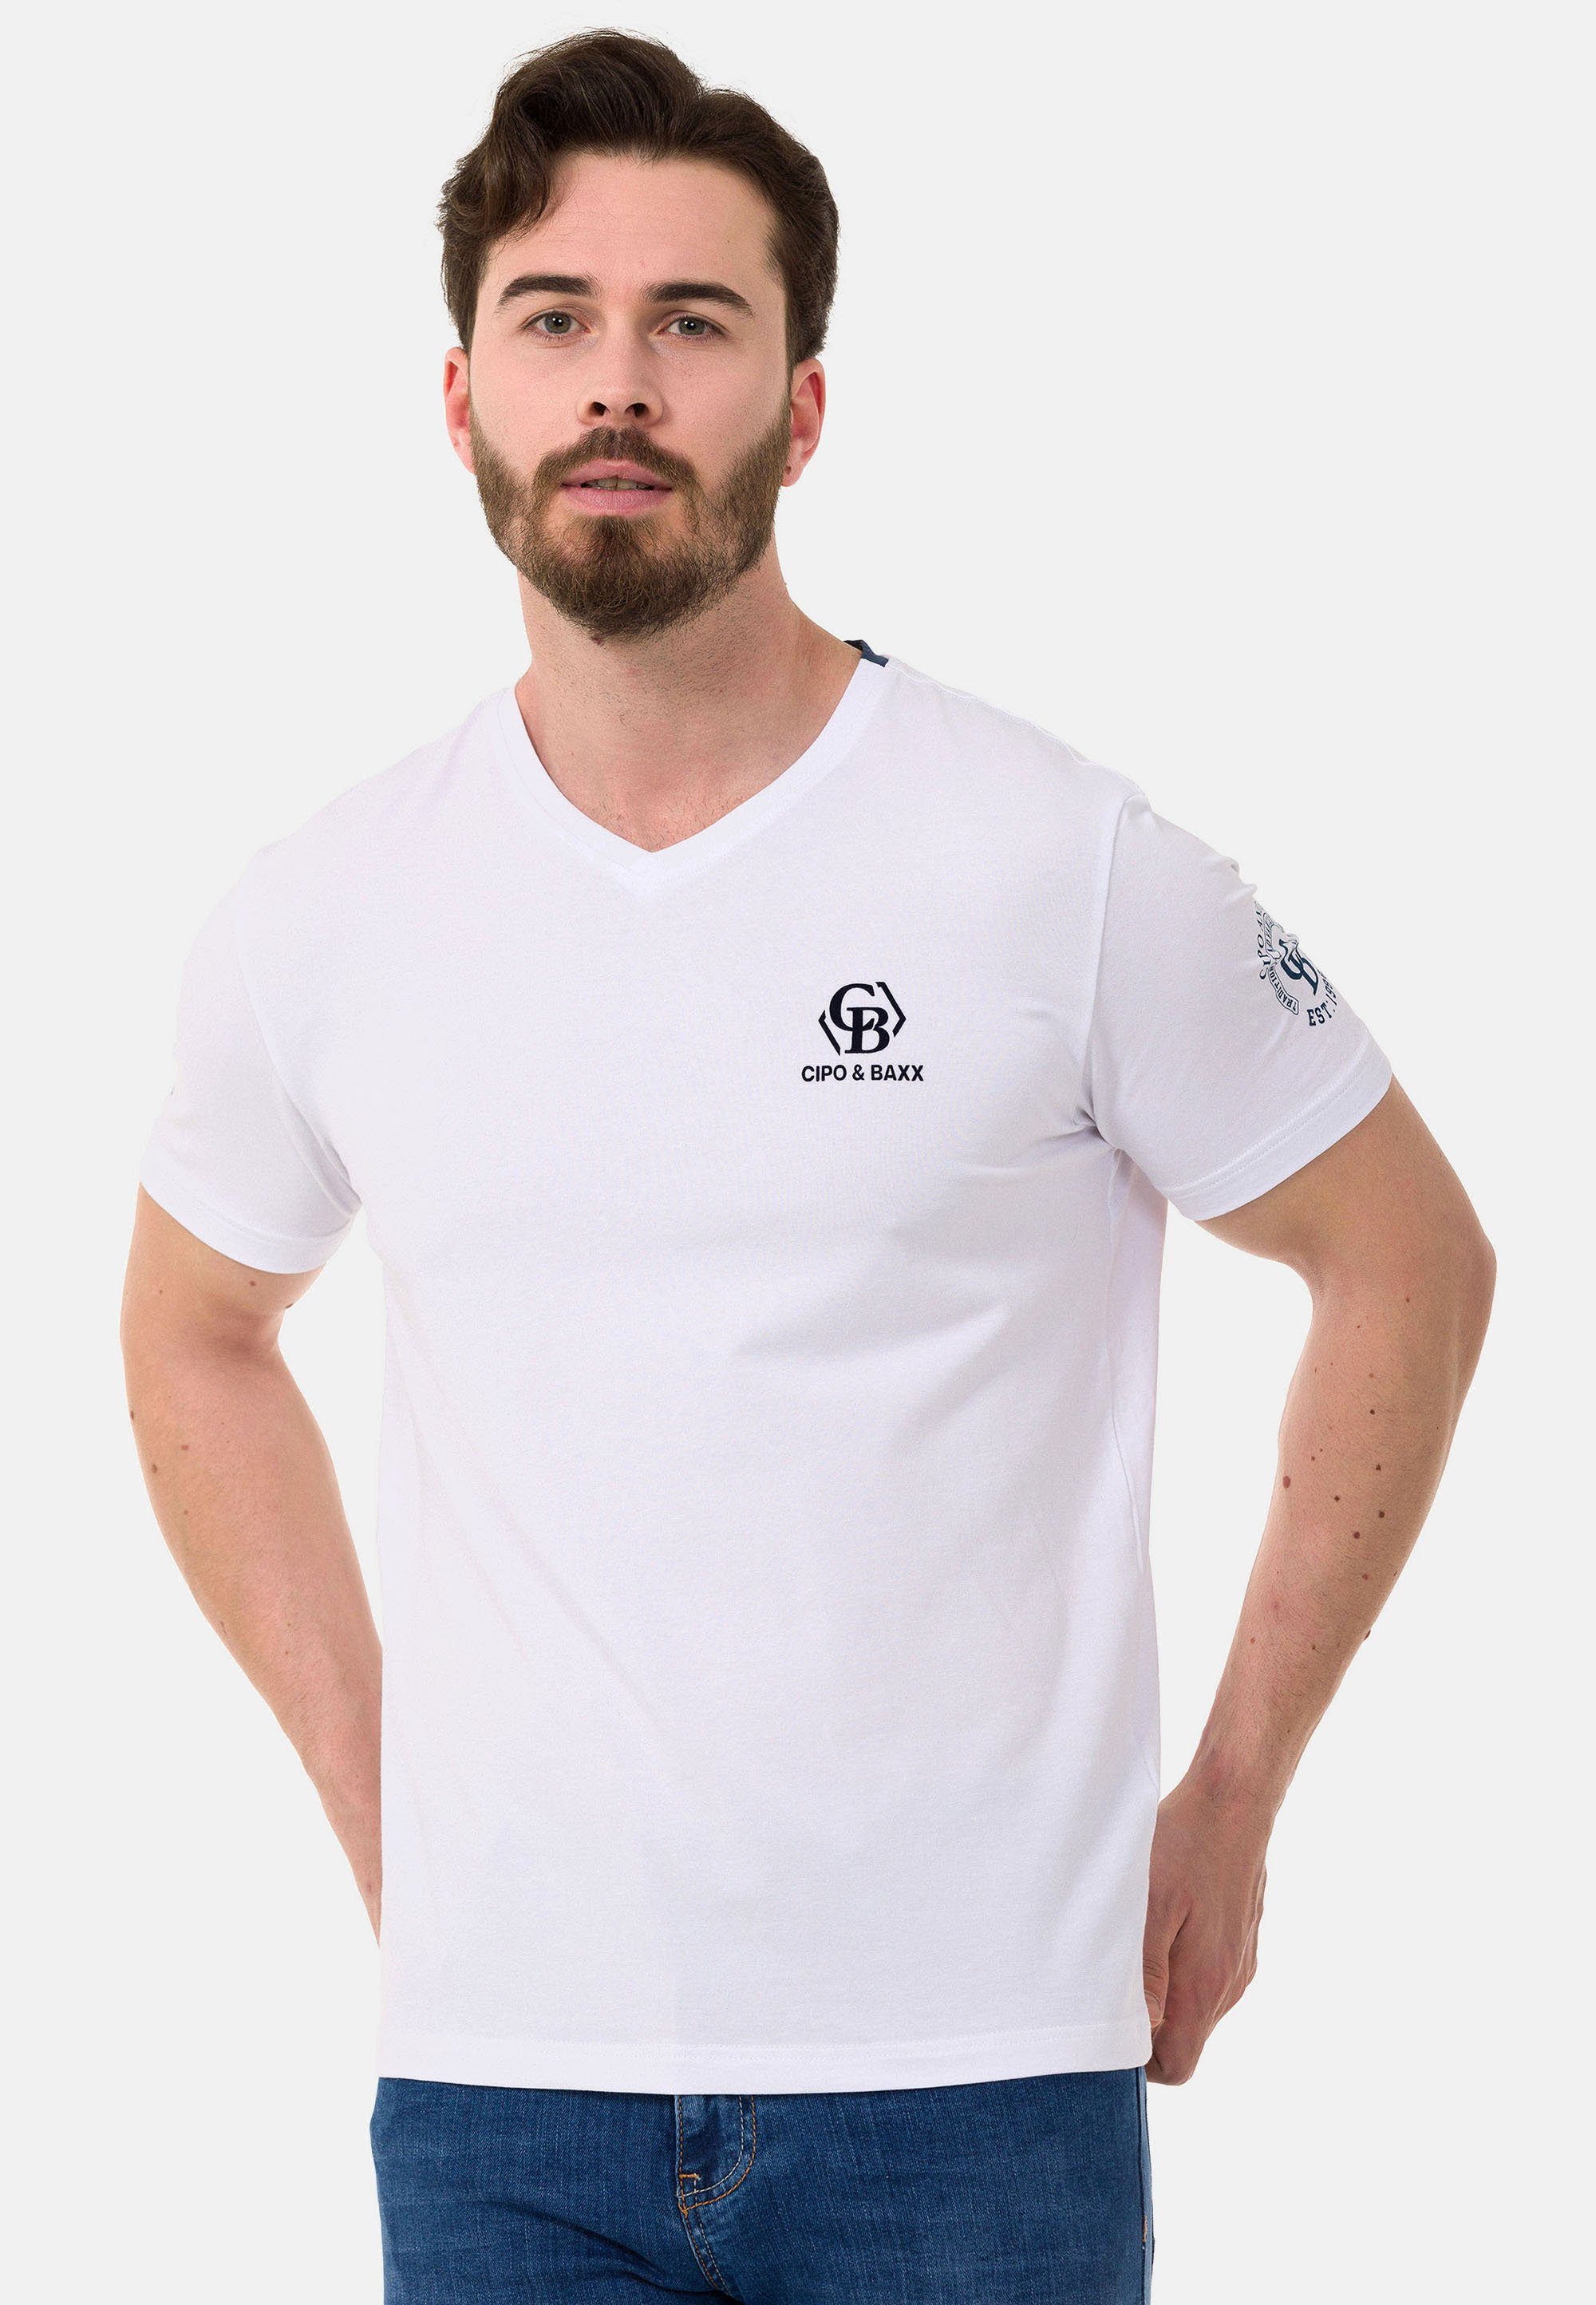 dezenten & T-Shirt Markenlogos mit Cipo Baxx weiß